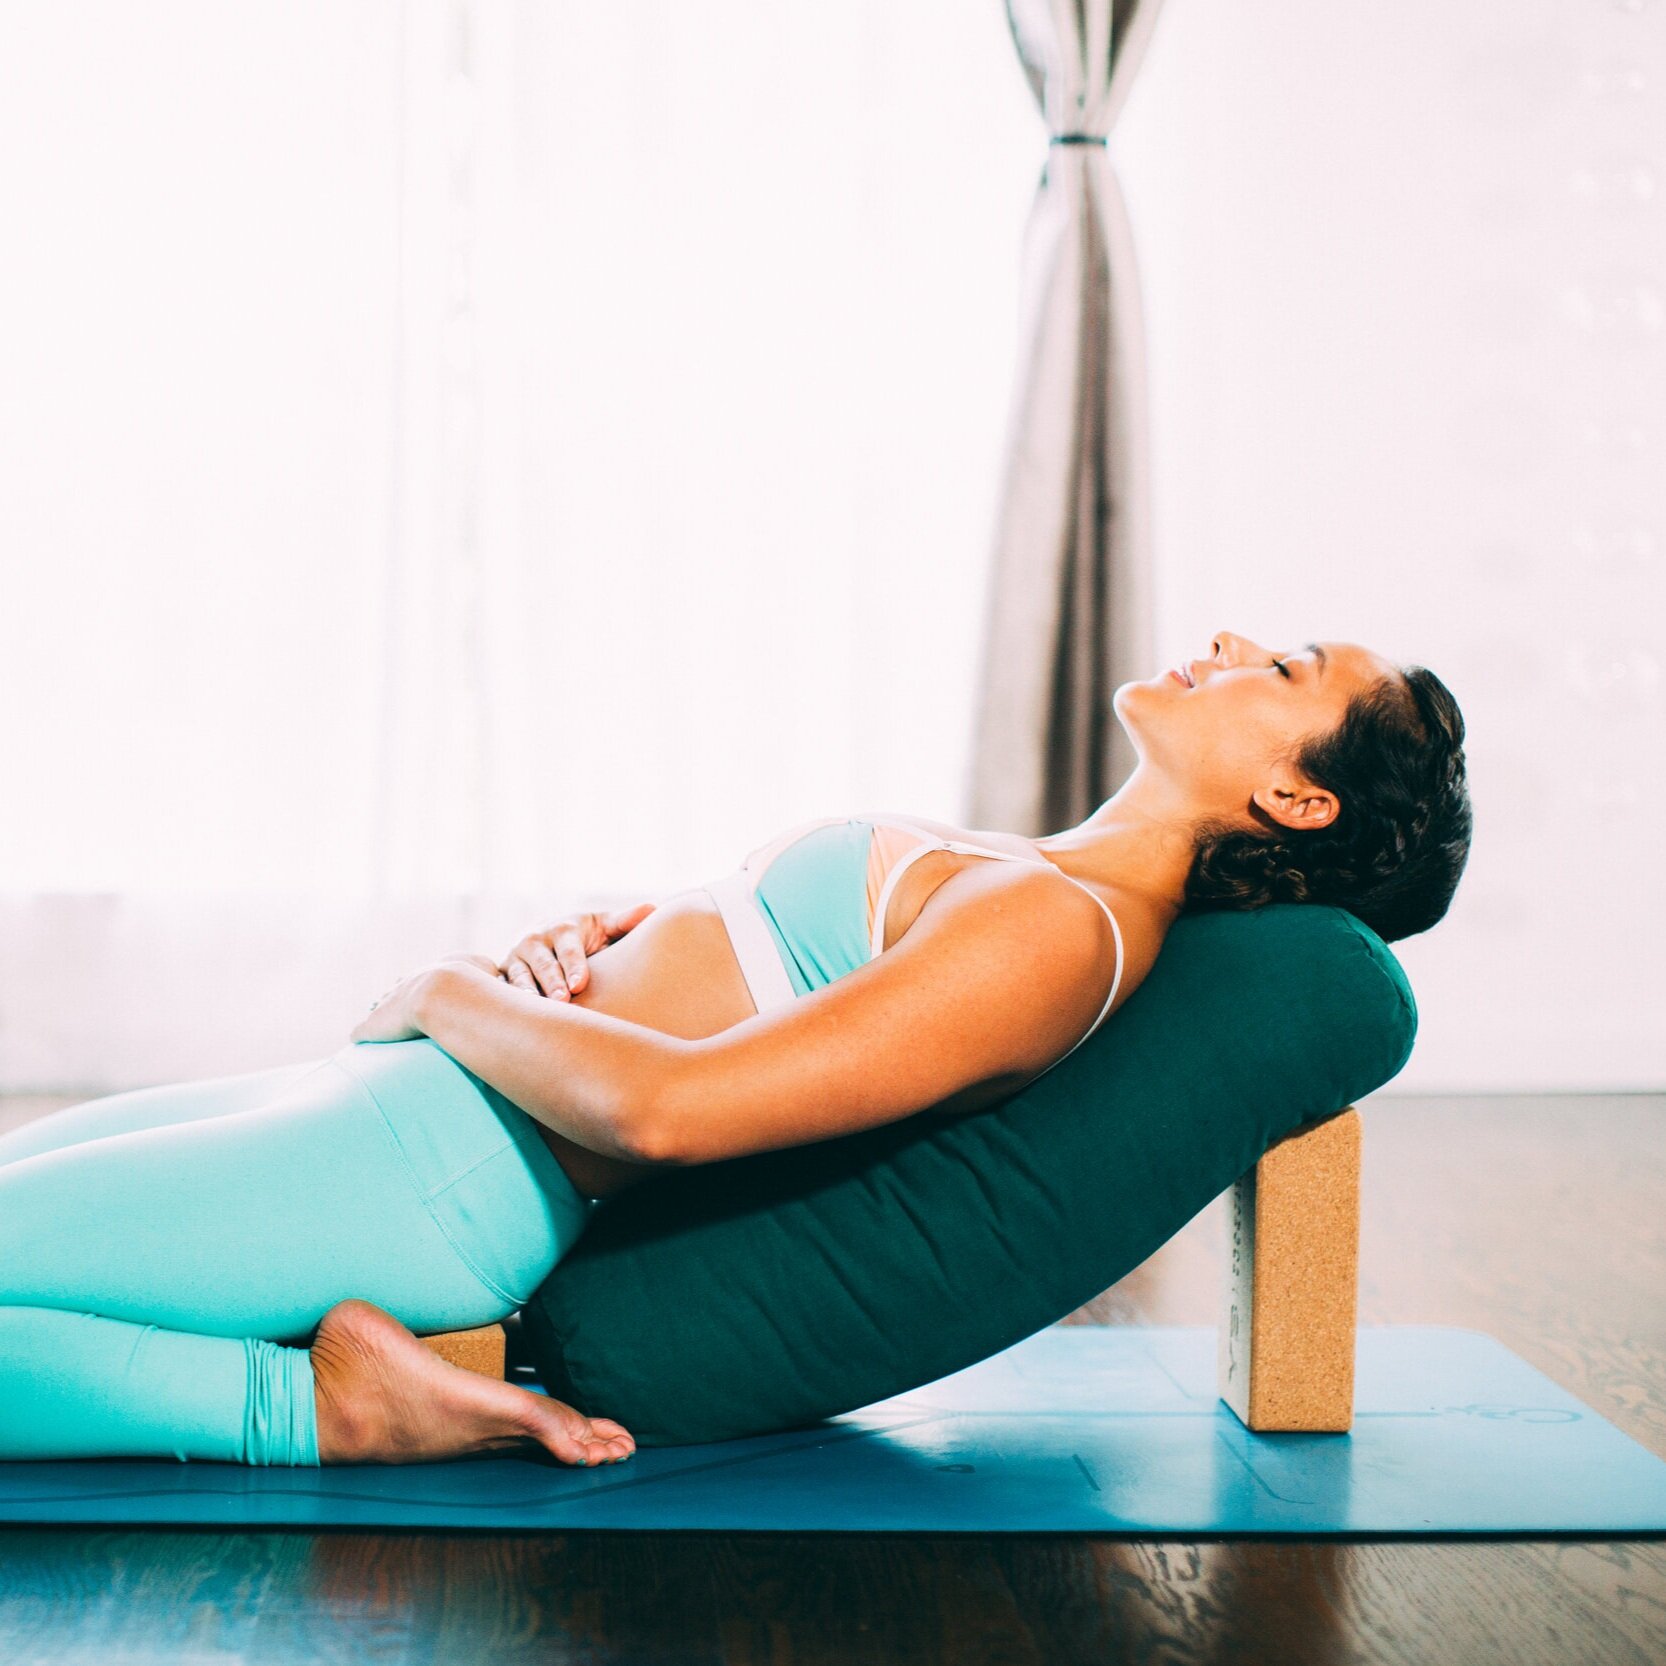 Can yoga help IBS? — Noisy Guts